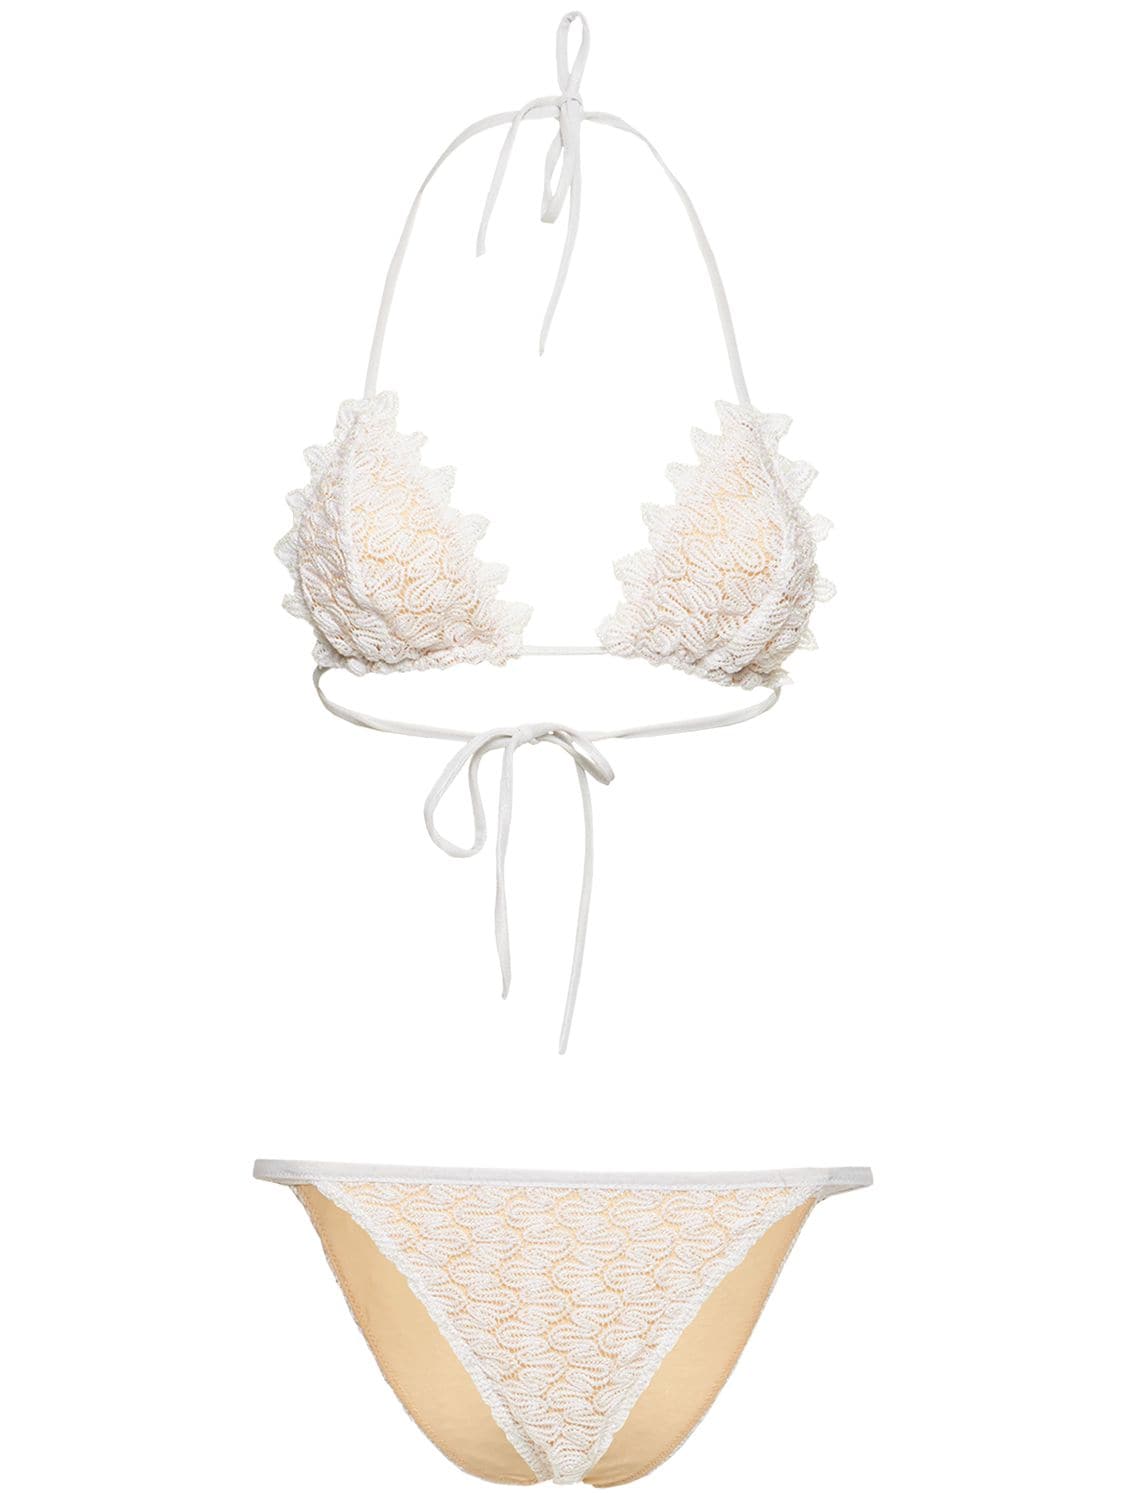 Lace Knit Triangle Bikini Set – WOMEN > CLOTHING > SWIMWEAR